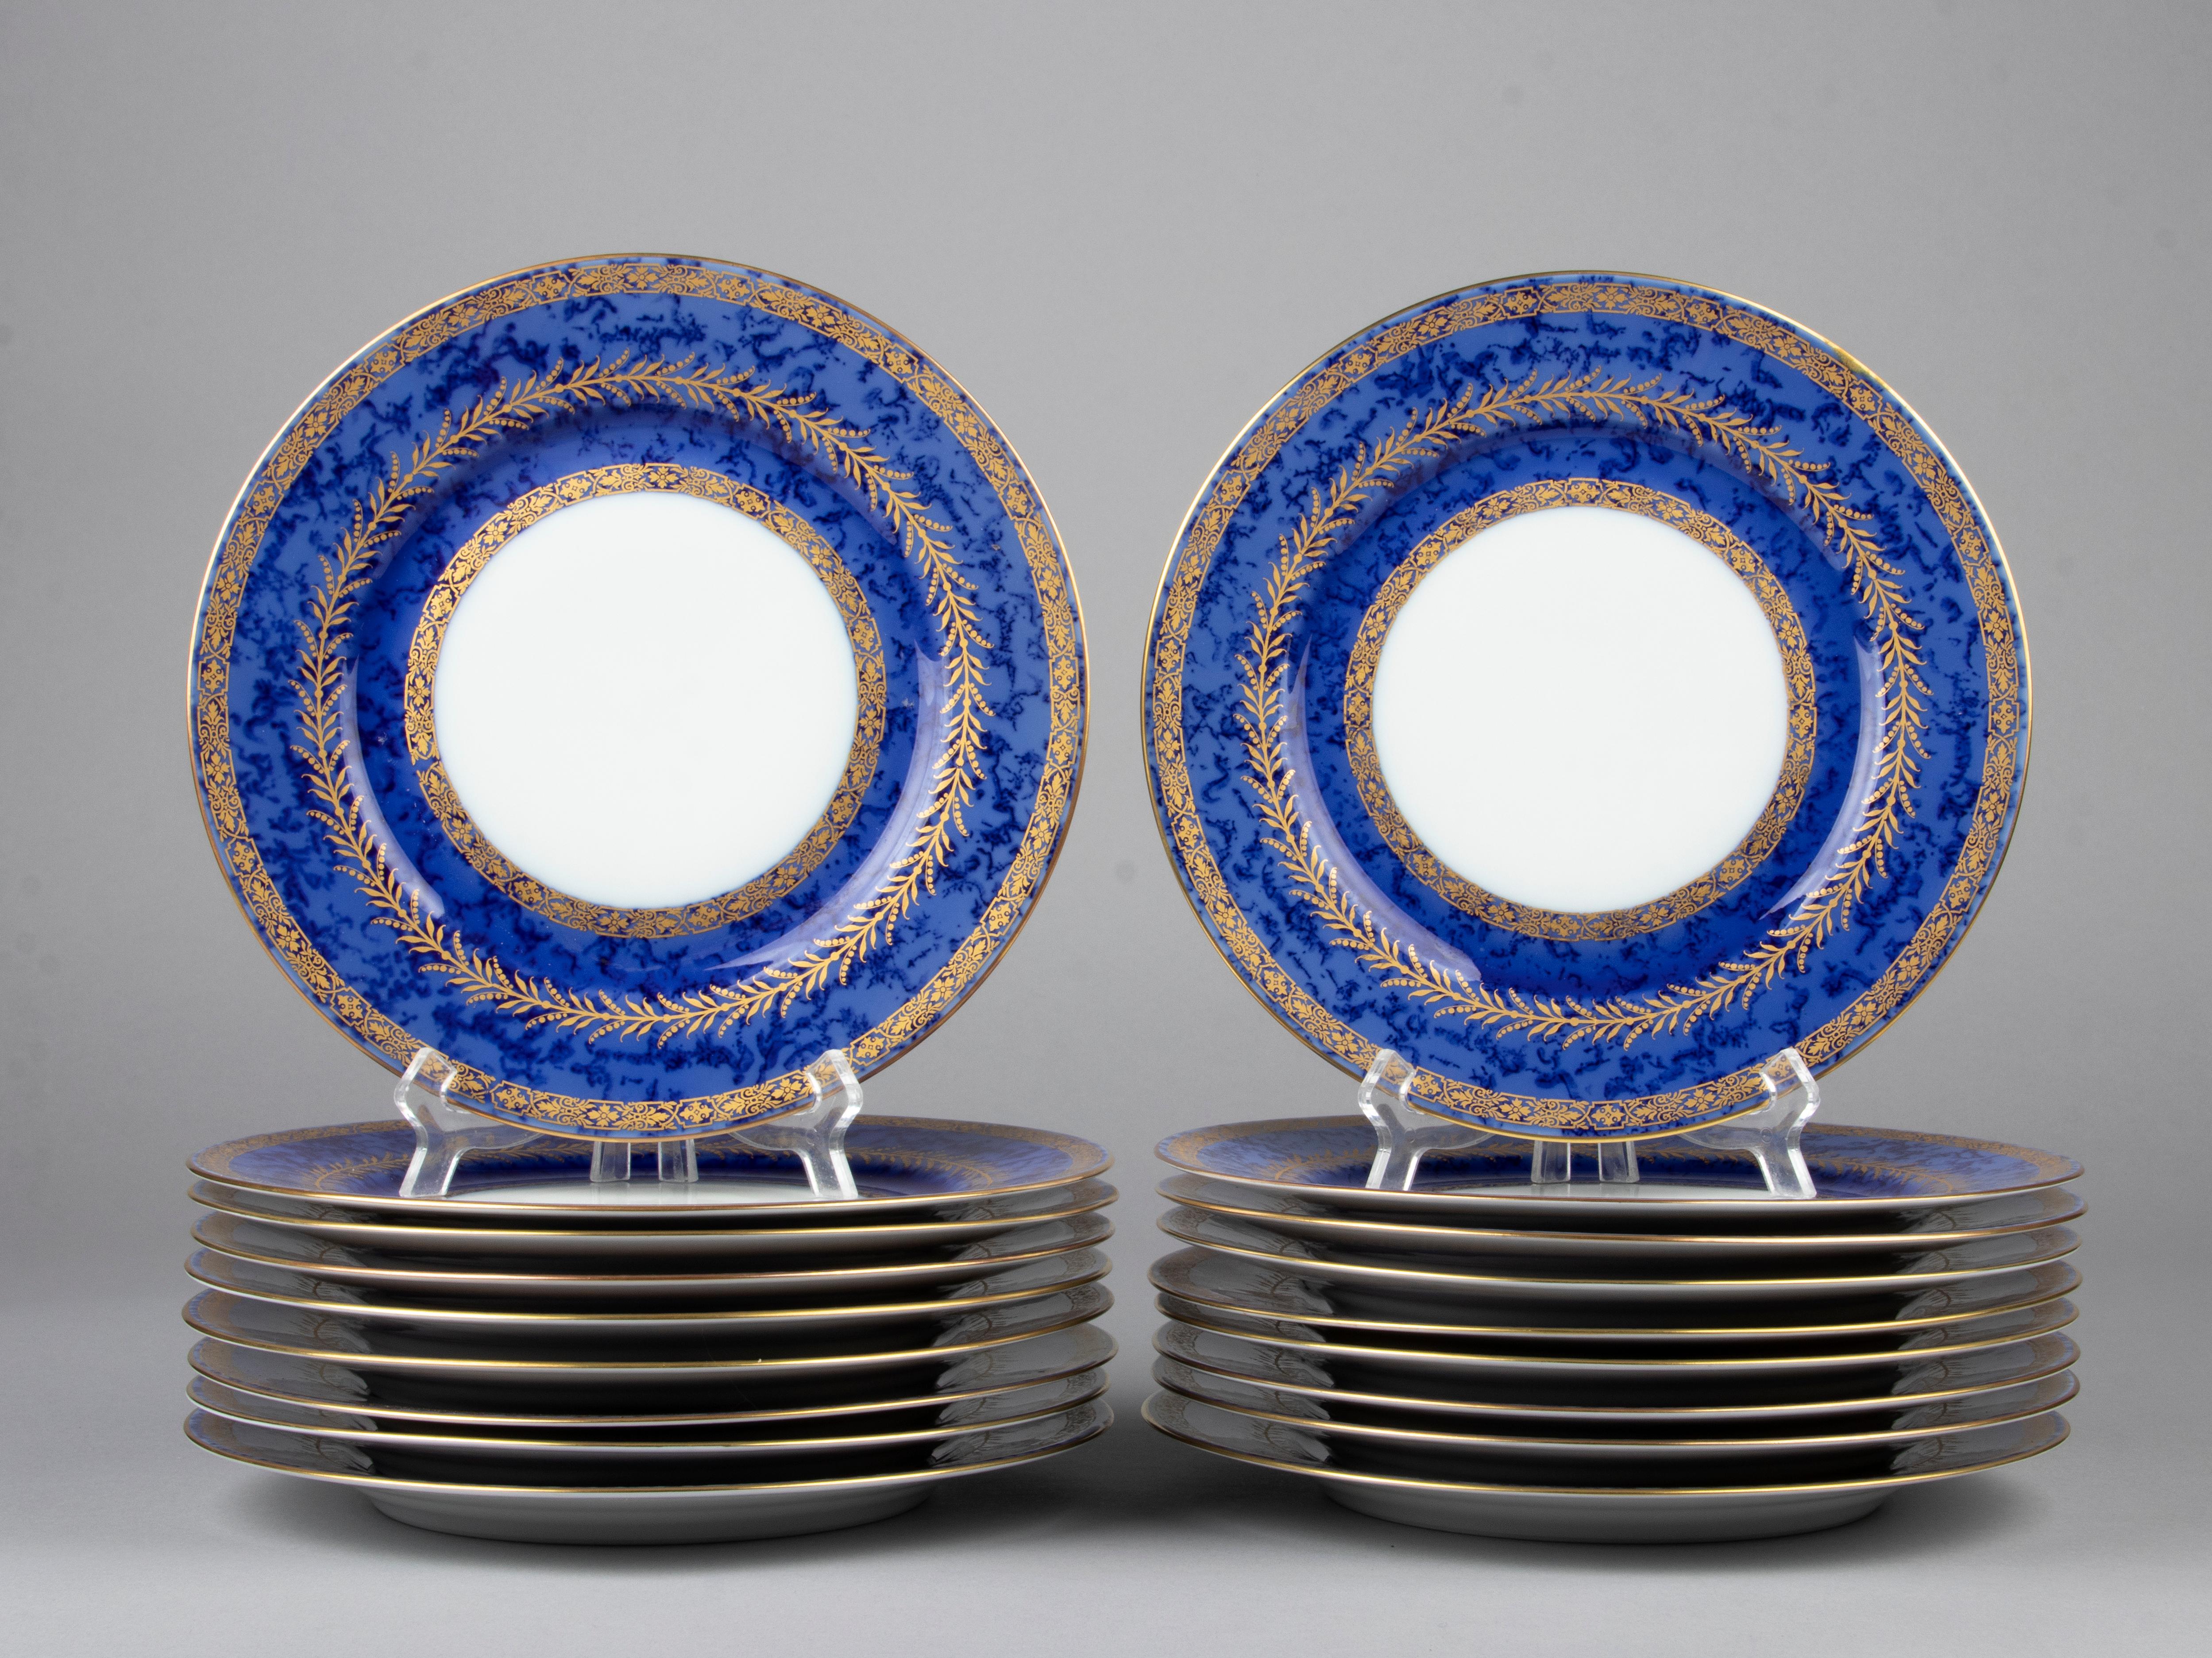 Magnifique ensemble de 18 assiettes plates en porcelaine de la marque française Raynaud Limoges. Les assiettes sont d'un bleu profond, avec une sorte de motif nuageux, décoré d'accents dorés. Le service est réalisé par Raynaud Limoges. Au dos des